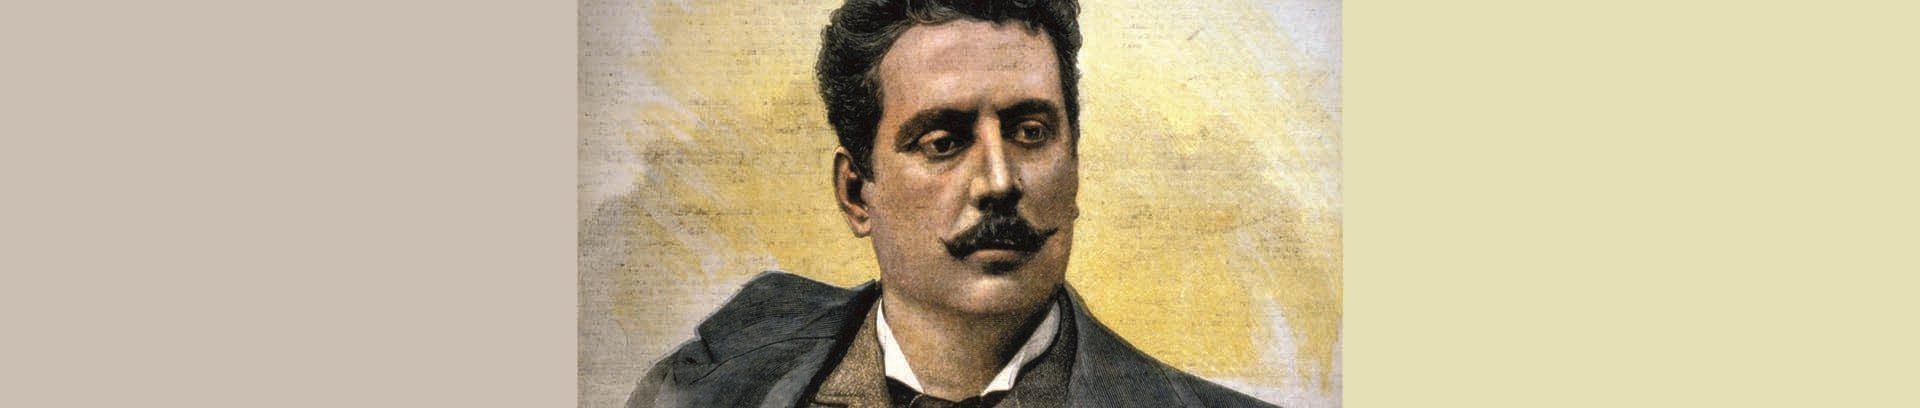 Portræt af Giacomo Puccini (1858-1924), italiensk komponist.